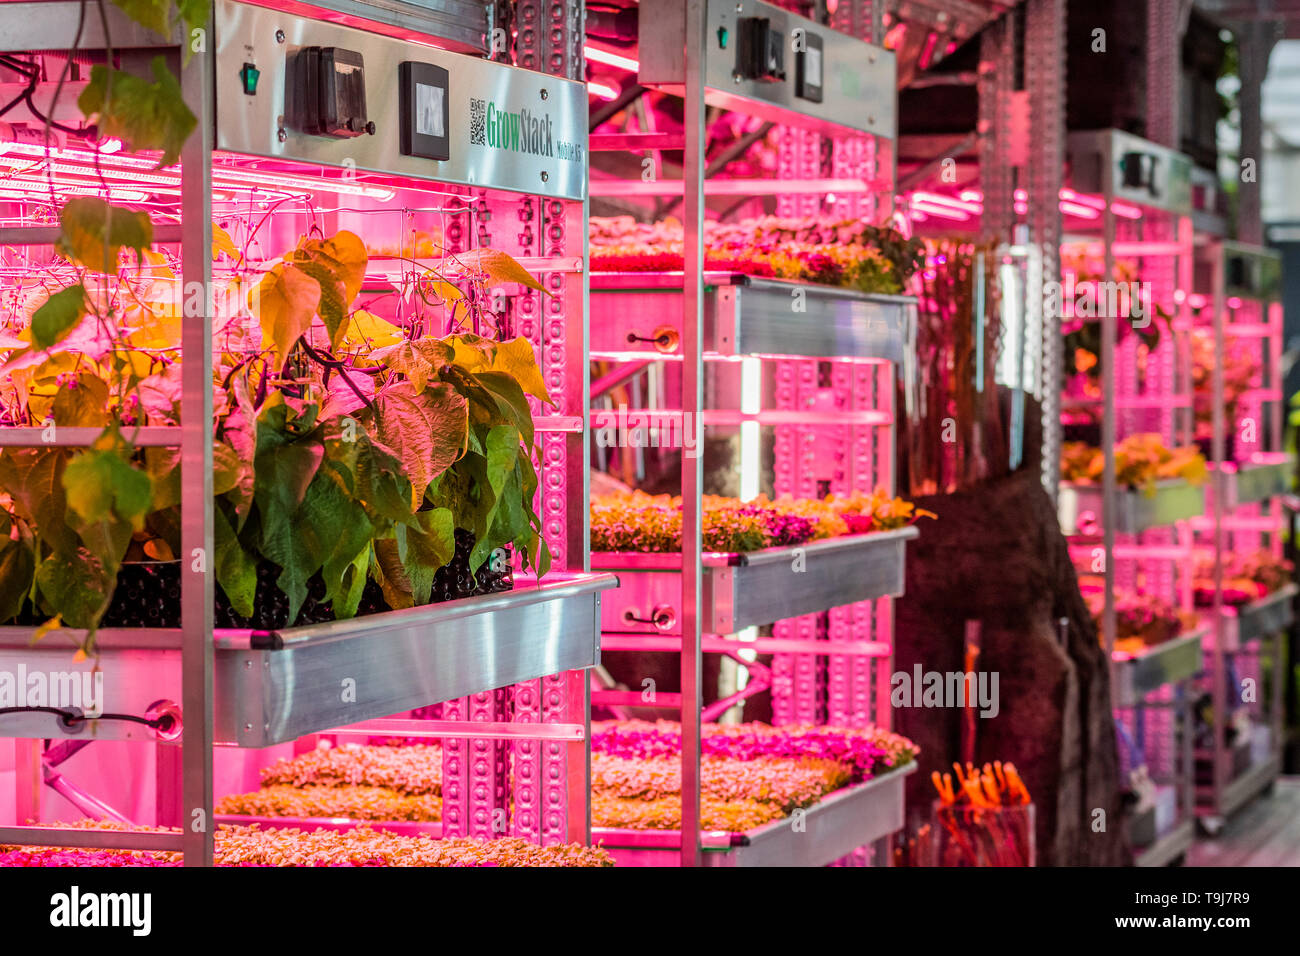 Londres, Royaume-Uni. 19 mai 2019. L'Ikea et Tom Dixon : Gardening permettra de sauver le monde, y compris les plantes hydroponiques - Appuyez sur preview journée à la RHS Chelsea Flower Show. Crédit : Guy Bell/Alamy Live News Banque D'Images